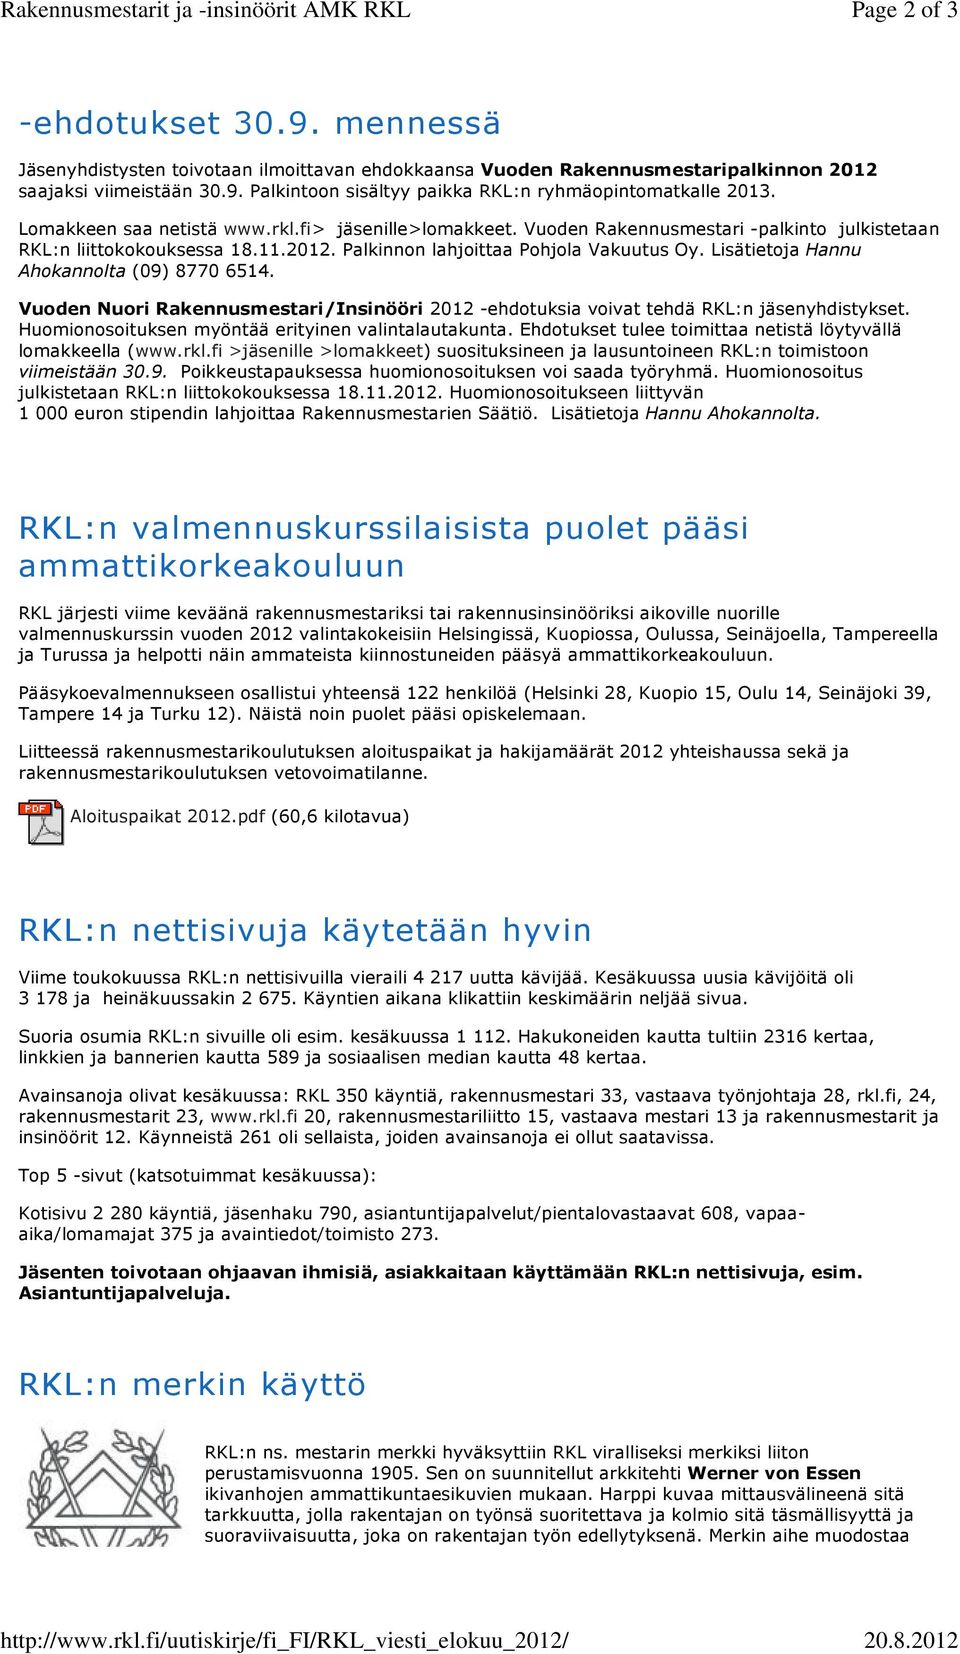 Lomakkeen saa netistä www.rkl.fi> jäsenille>lomakkeet. Vuoden Rakennusmestari -palkinto julkistetaan RKL:n liittokokouksessa 18.11.2012. Palkinnon lahjoittaa Pohjola Vakuutus Oy.